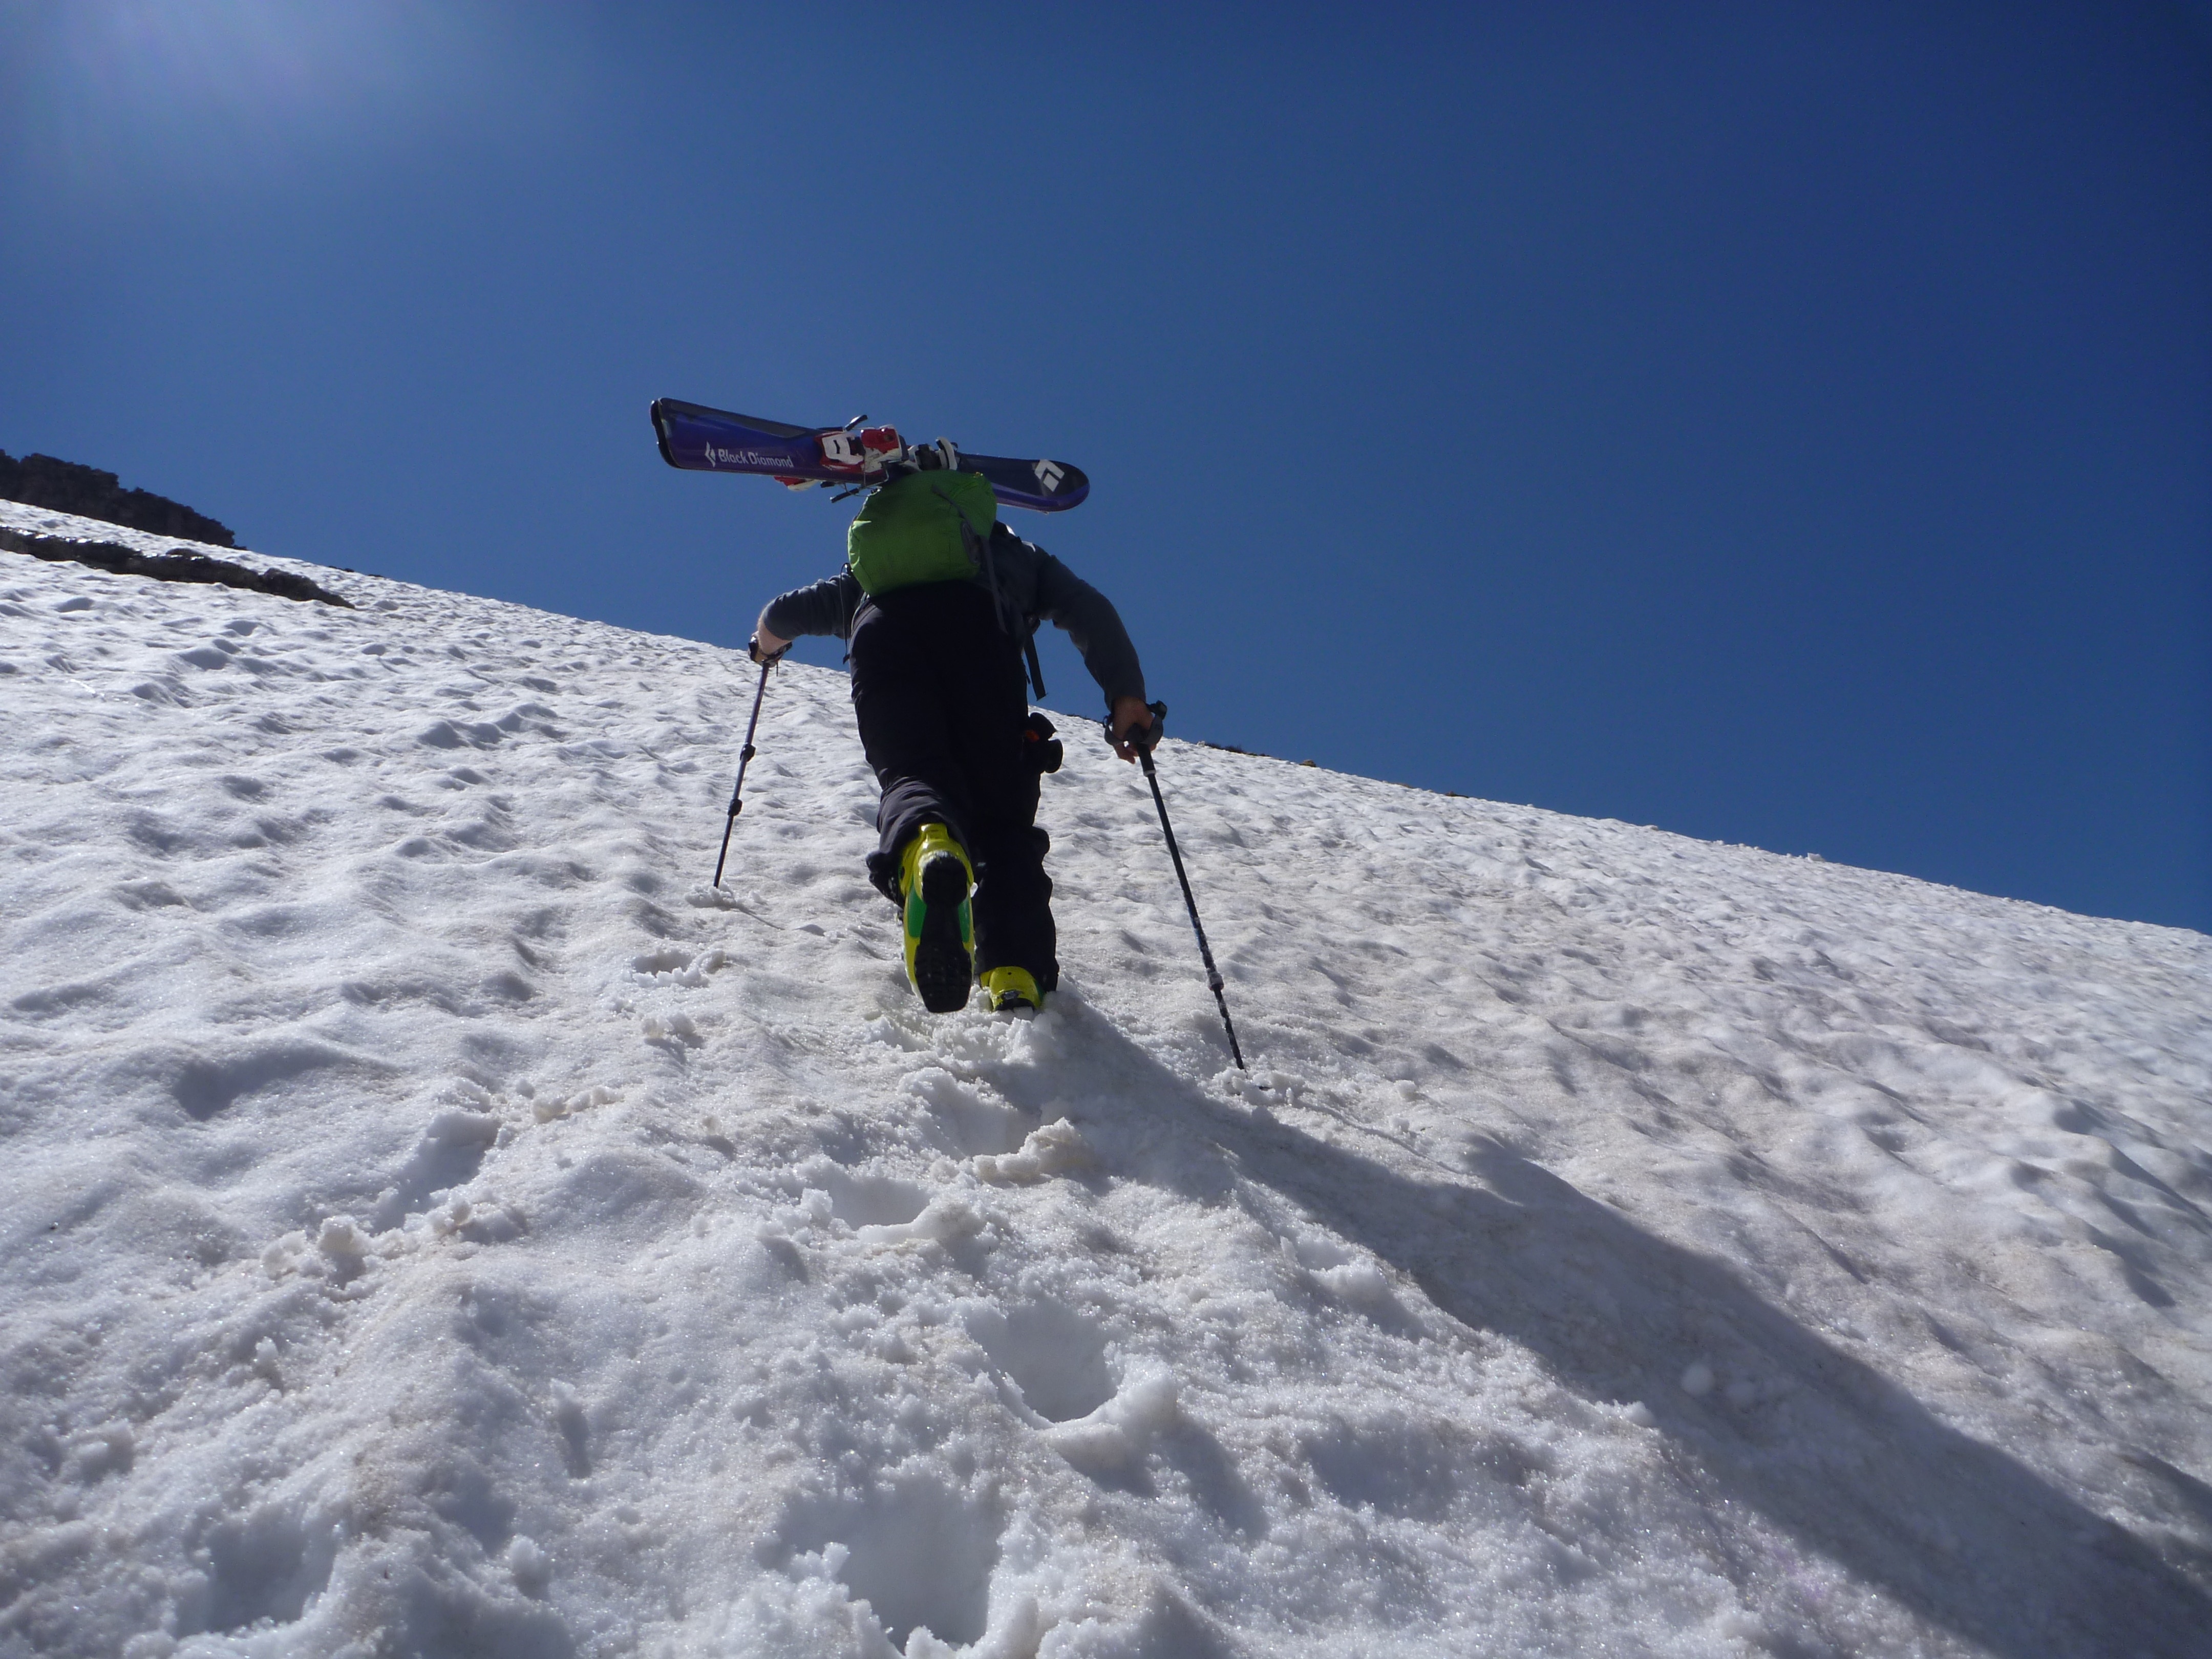 Горные лыжи фото в горах. Телемарка катание с гор. Фотография лыжника взбирающегося на гору. Обувь лыжника. Ice skis